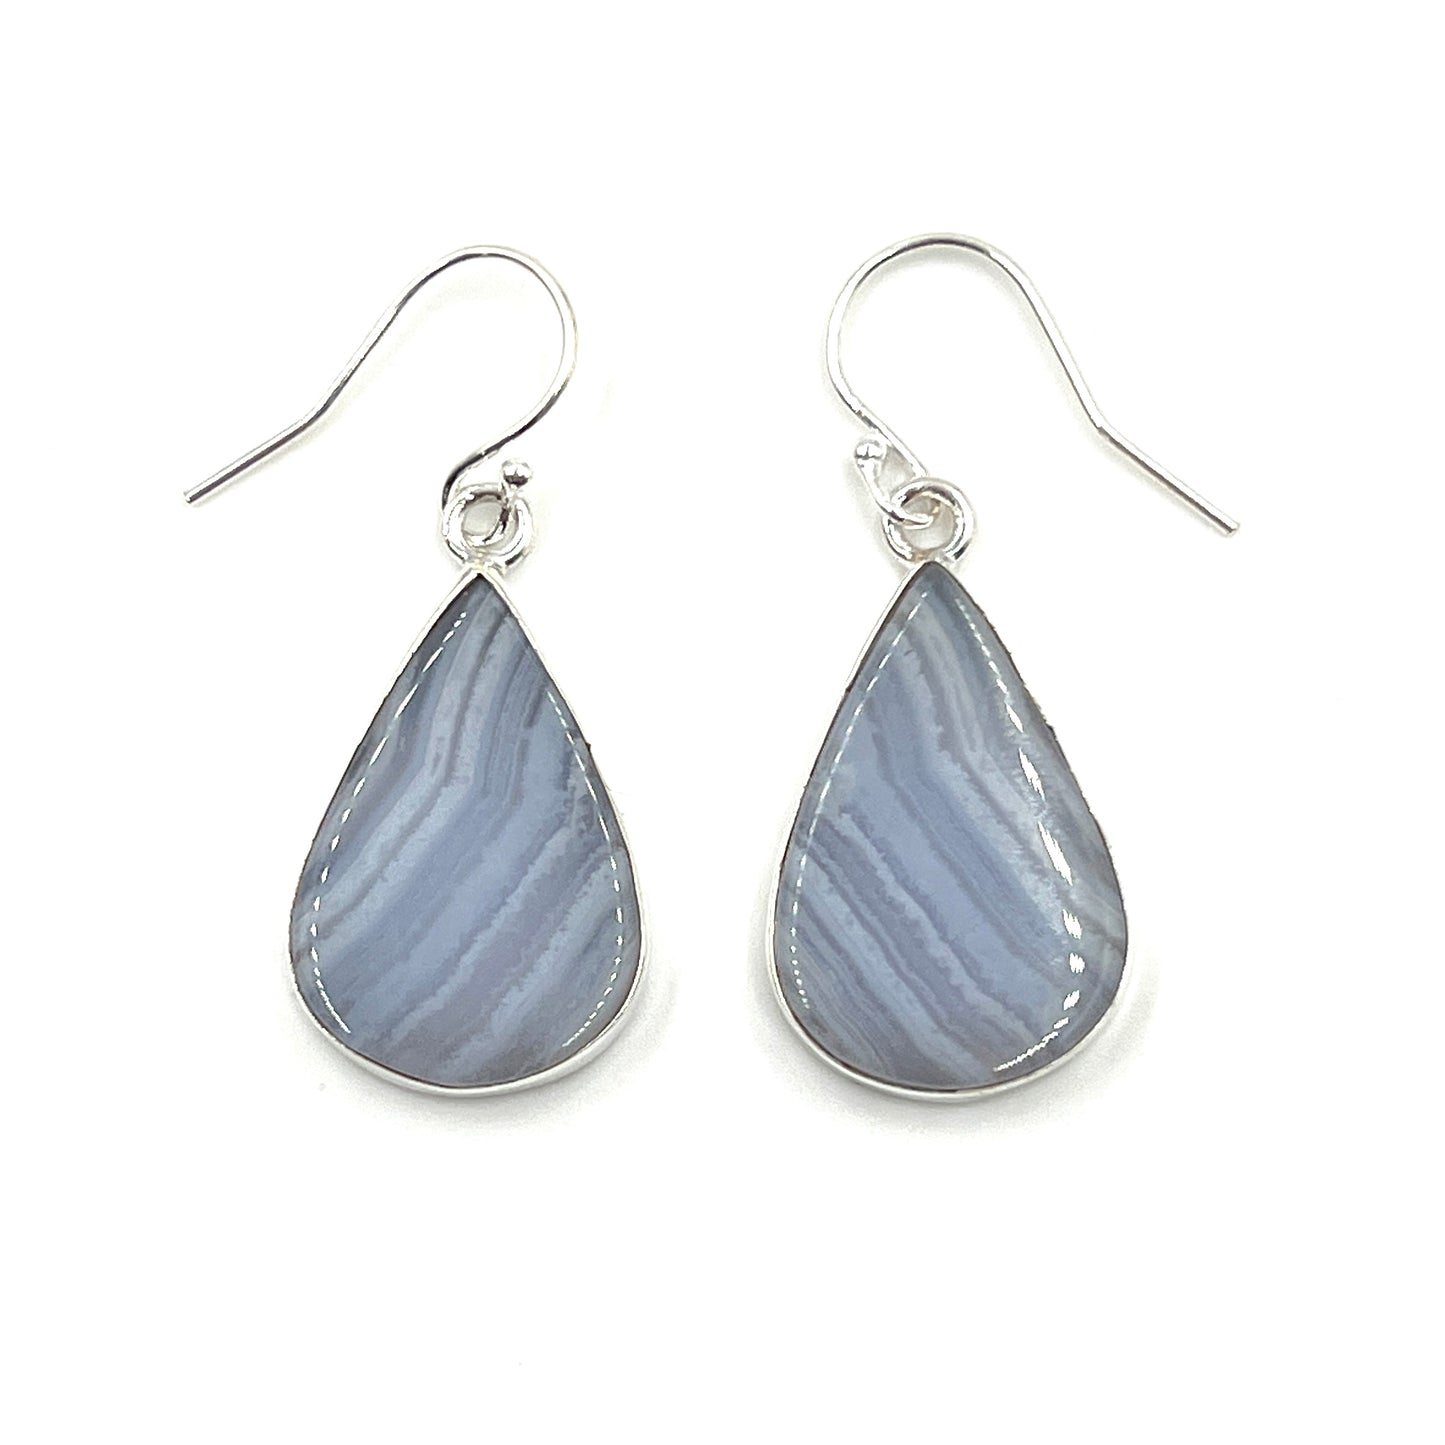 Teardrop Blue Lace Agate Earrings